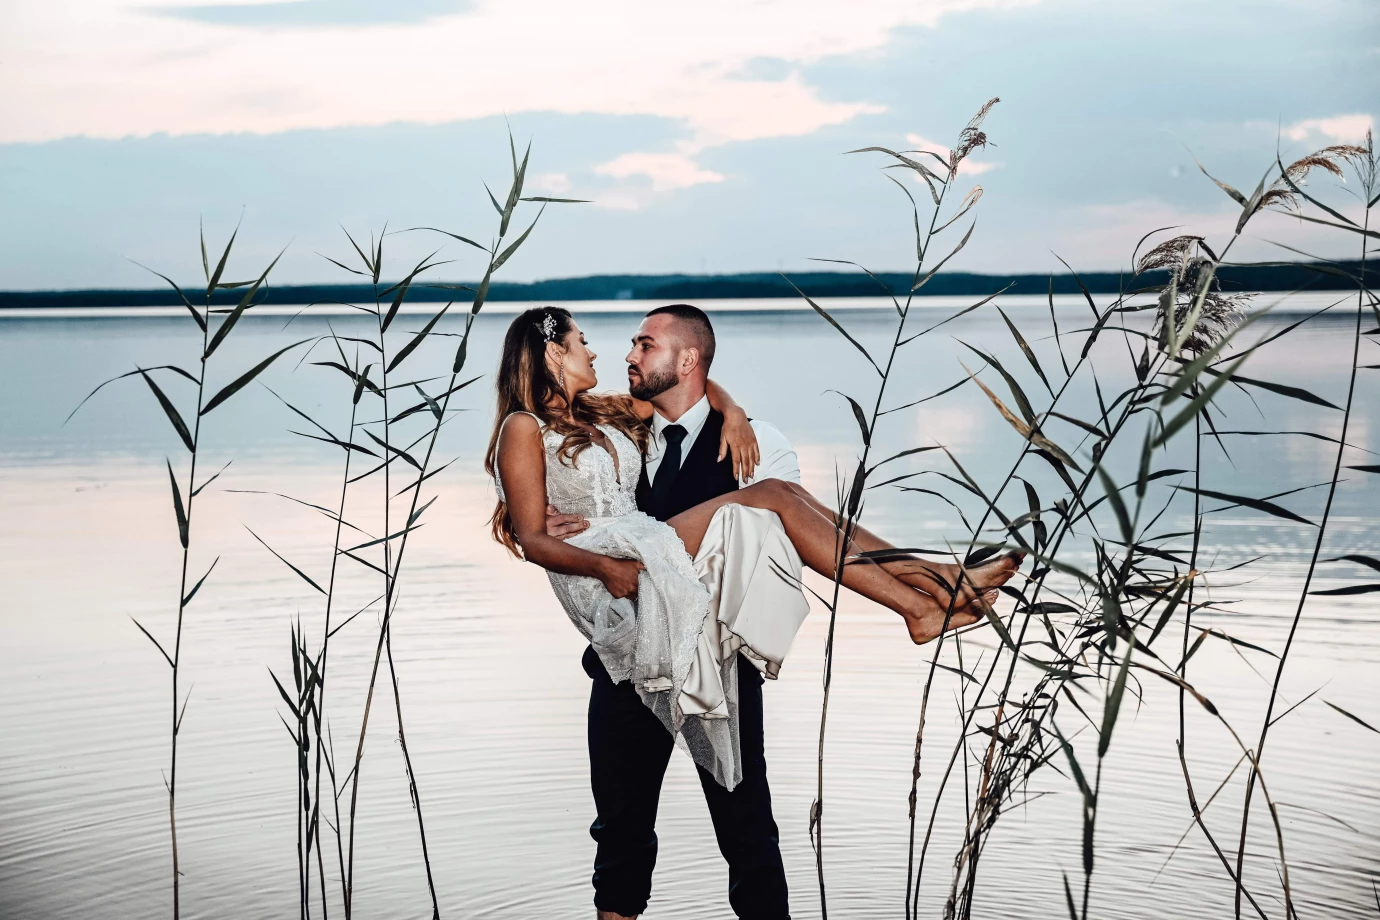 fotograf tomaszow-mazowiecki foto-kierebinscy portfolio zdjecia slubne inspiracje wesele plener slubny sesja slubna